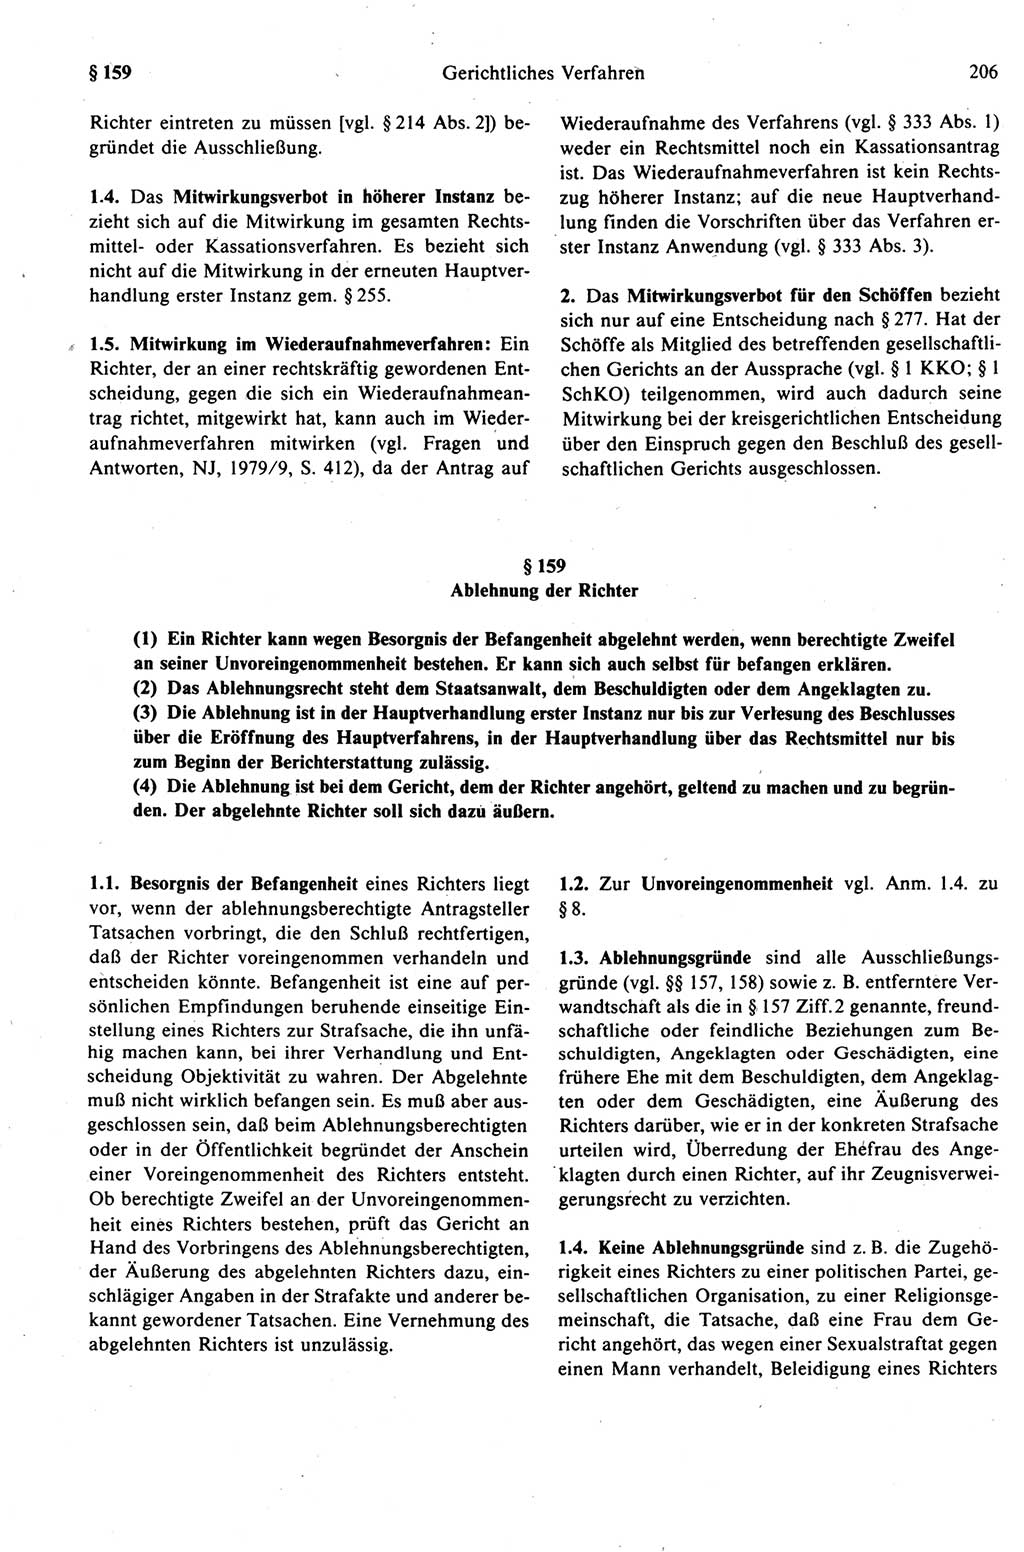 Strafprozeßrecht der DDR (Deutsche Demokratische Republik), Kommentar zur Strafprozeßordnung (StPO) 1989, Seite 206 (Strafprozeßr. DDR Komm. StPO 1989, S. 206)